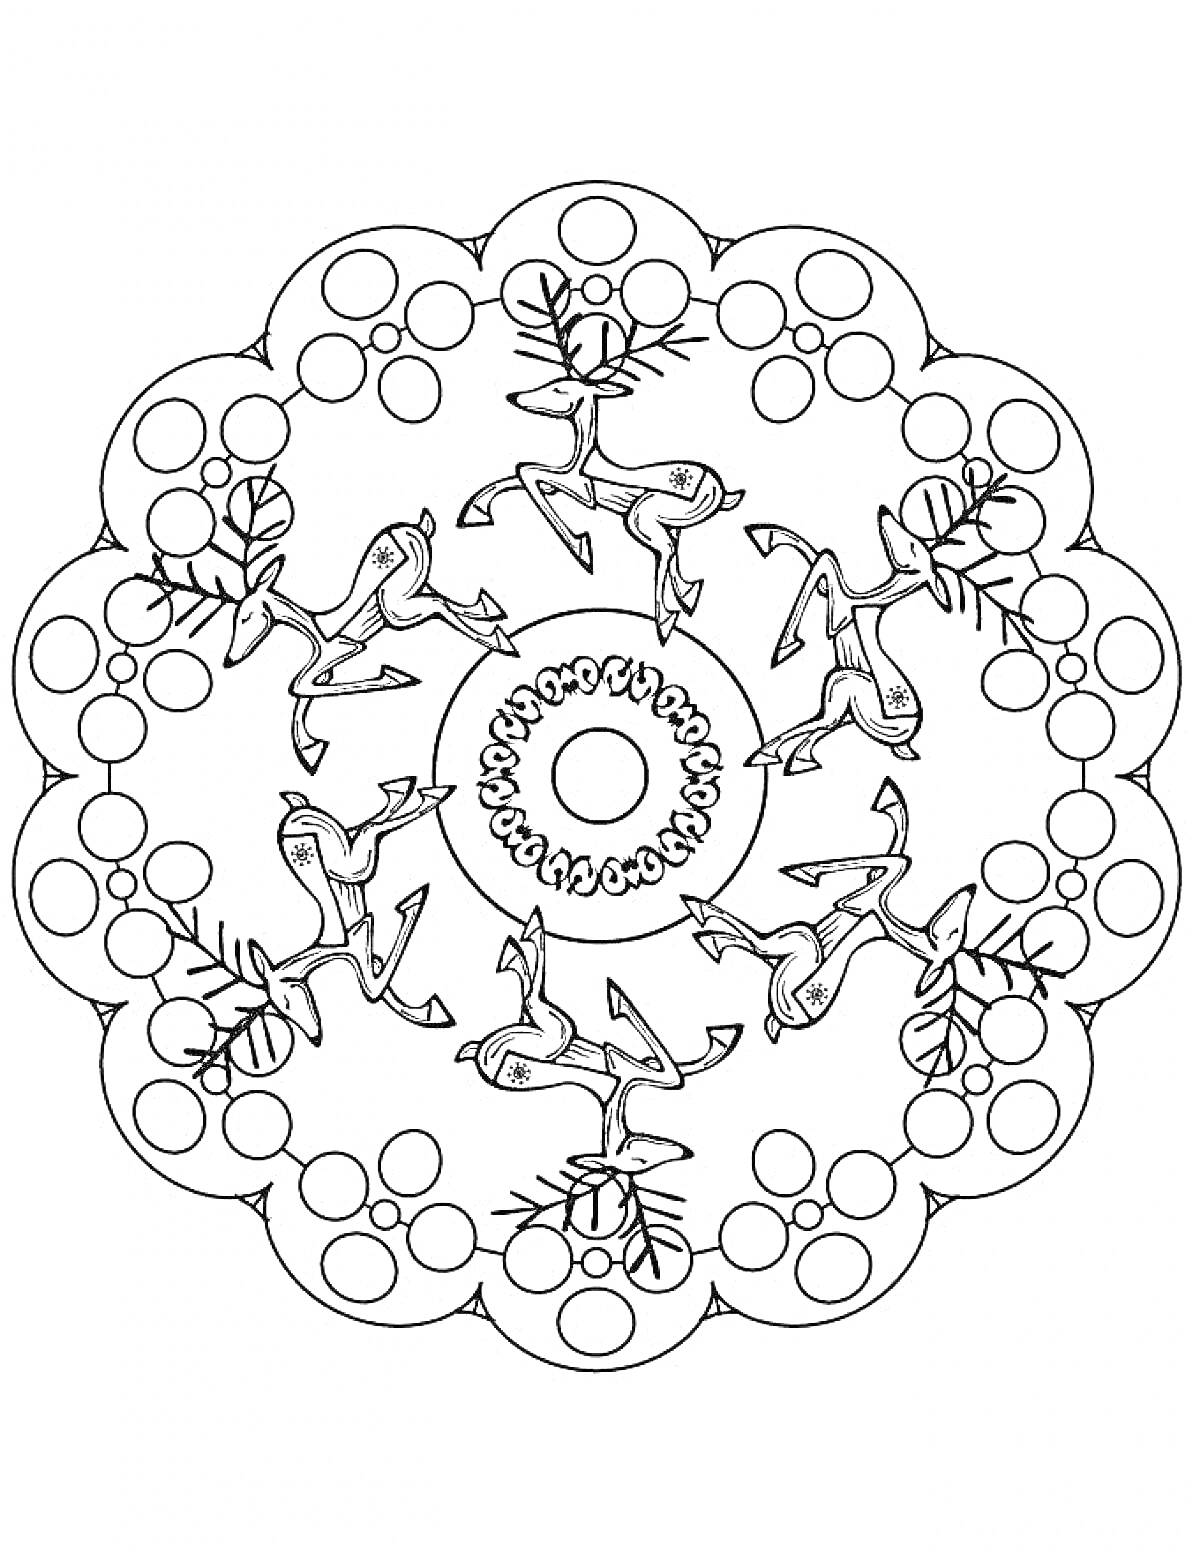 Раскраска Мандала с оленями, кругами и ёлками на Новый год